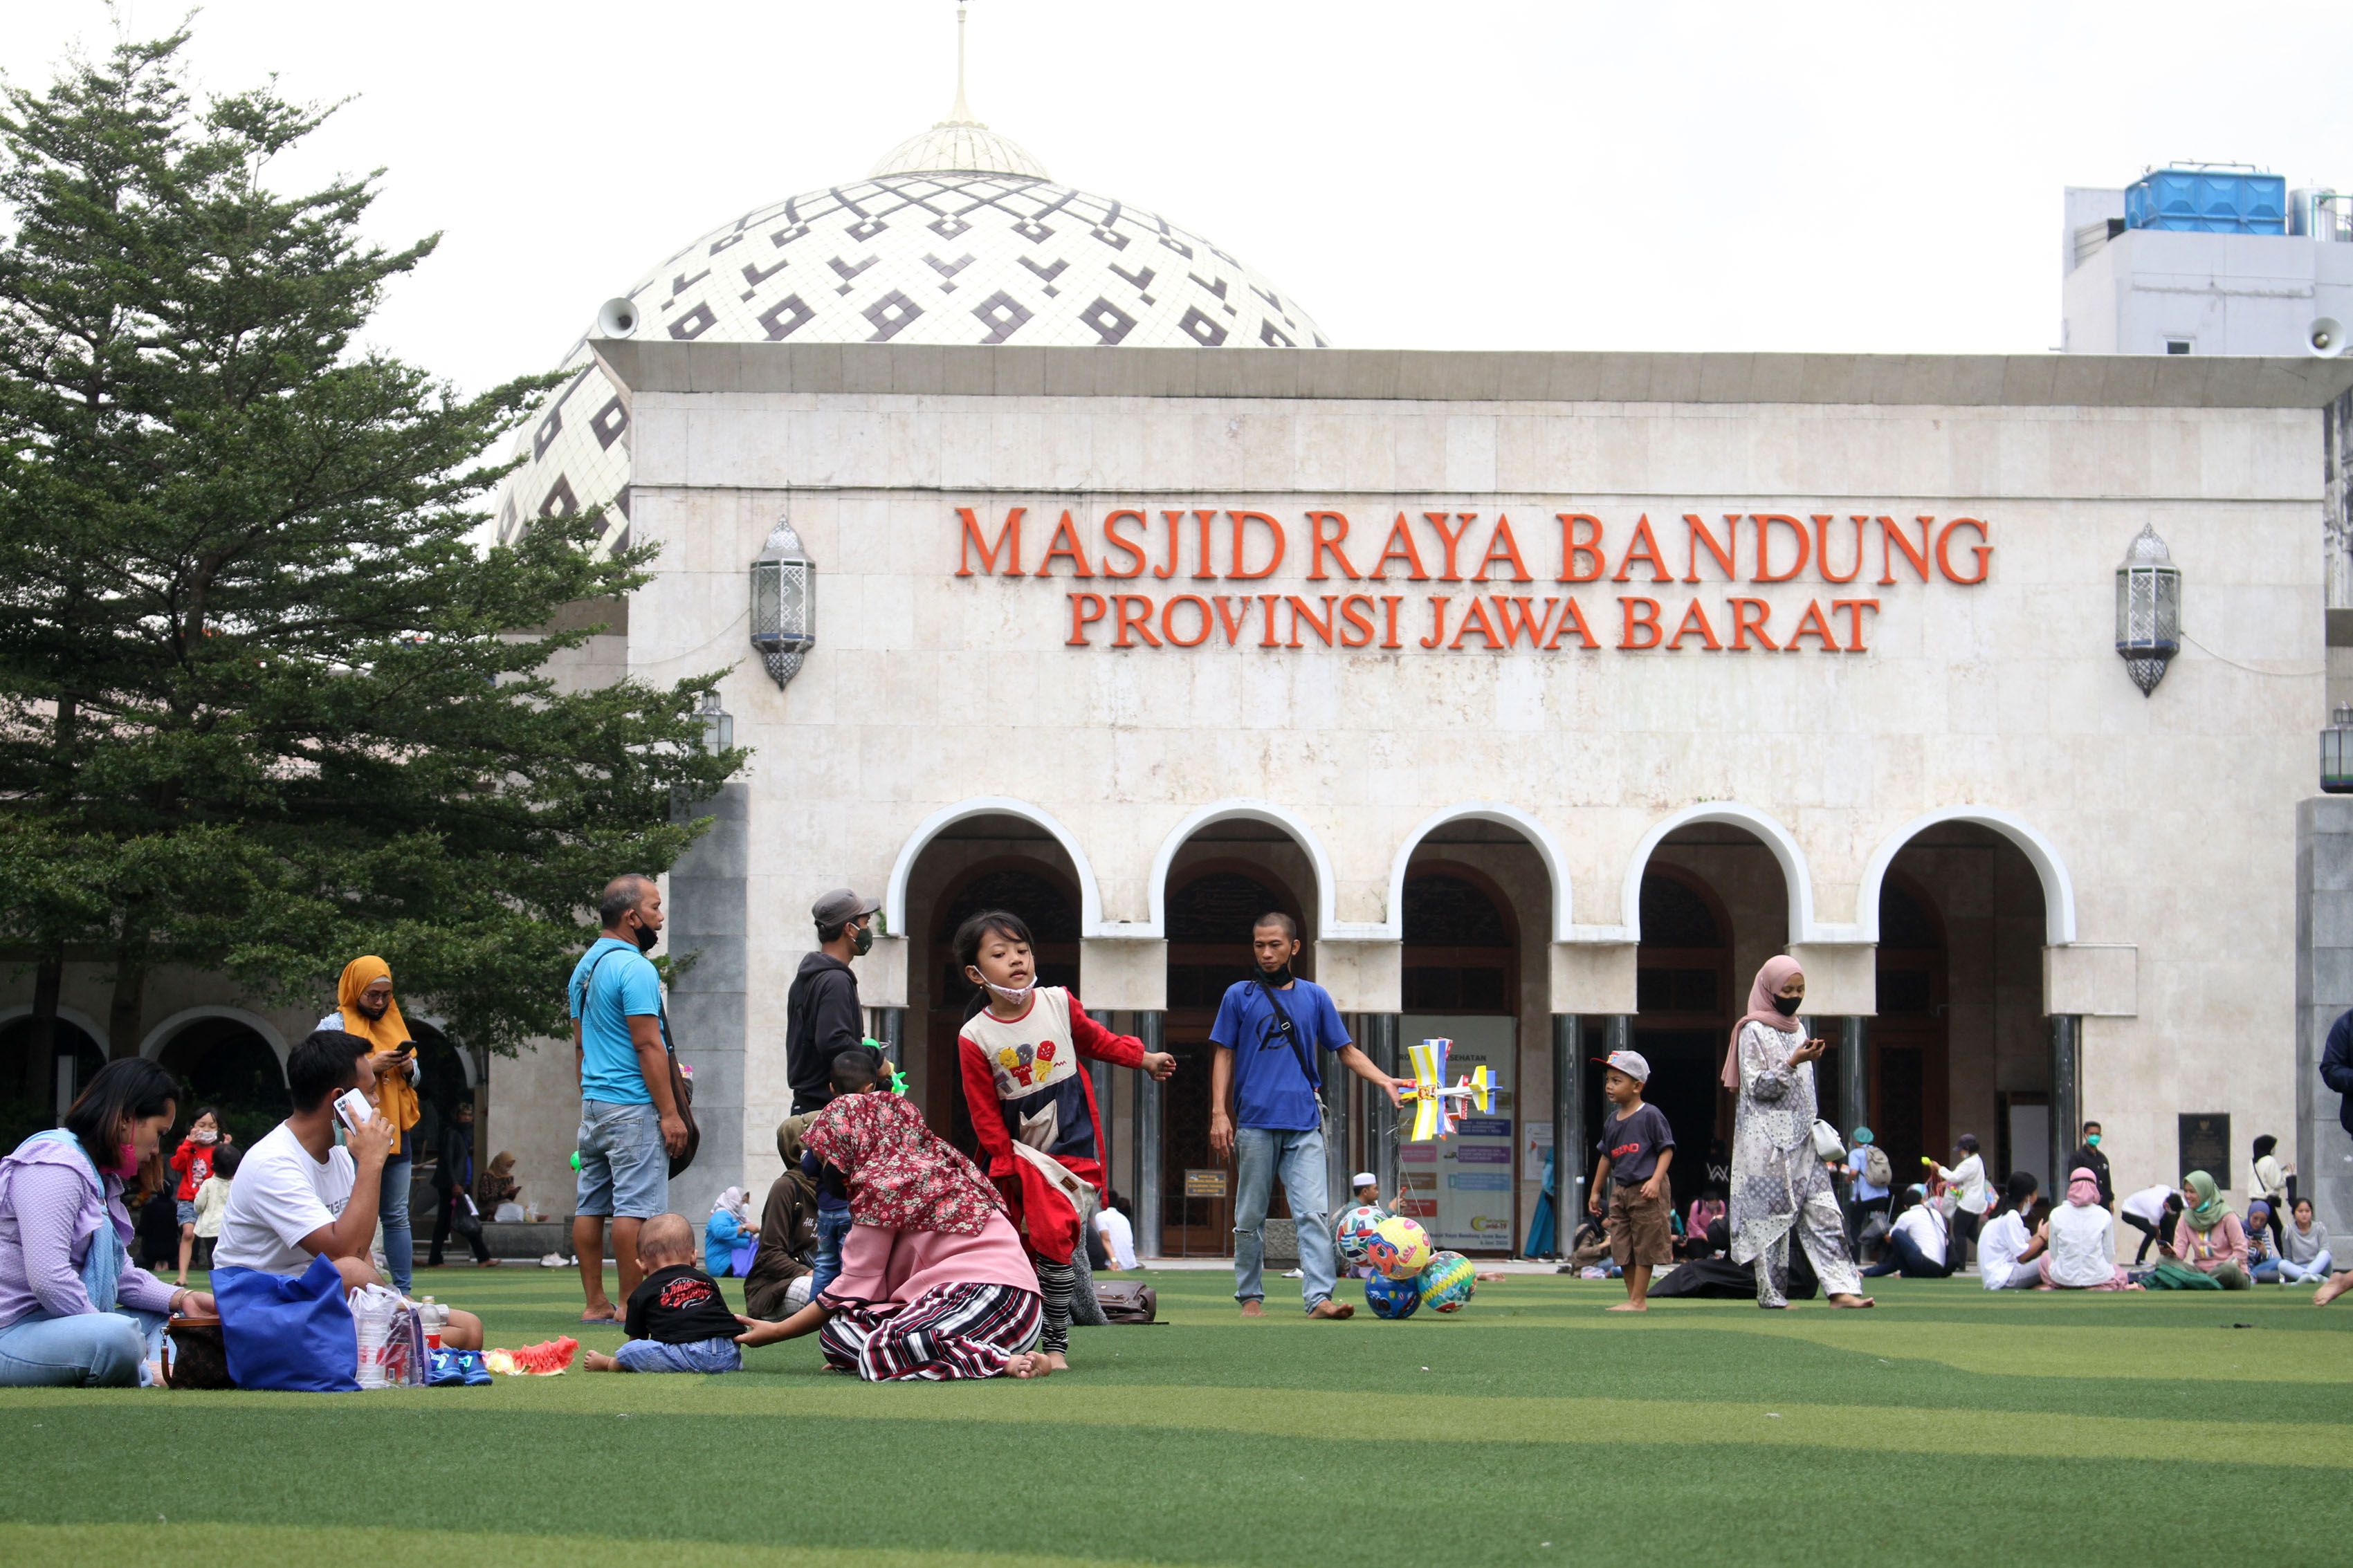 WARGA beraktivitas di taman Alun-alun Bandung, Jln. Dalem Kaum, Kota Bandung, Selasa, 7 September 2021./Darma Legi/Galamedia